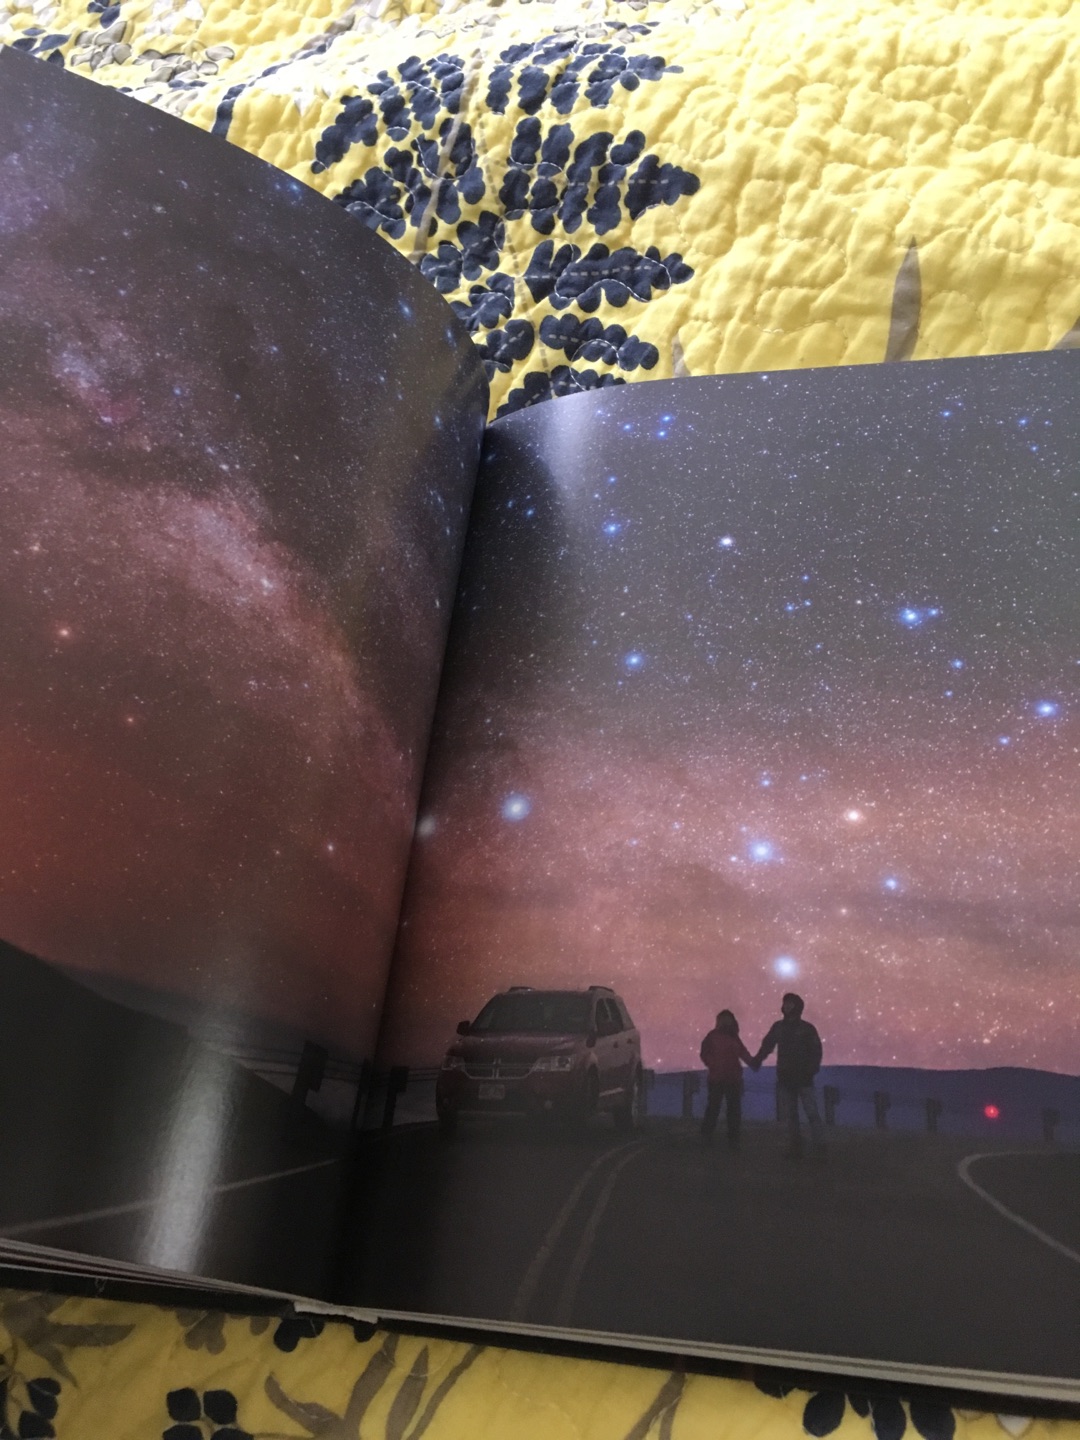 有活动果断下手。一大早收到这本《星空摄影笔记》，特别开心！一直想要学习的领悟，一定好好研读。希望有一天也能拍出自己的星光大片。